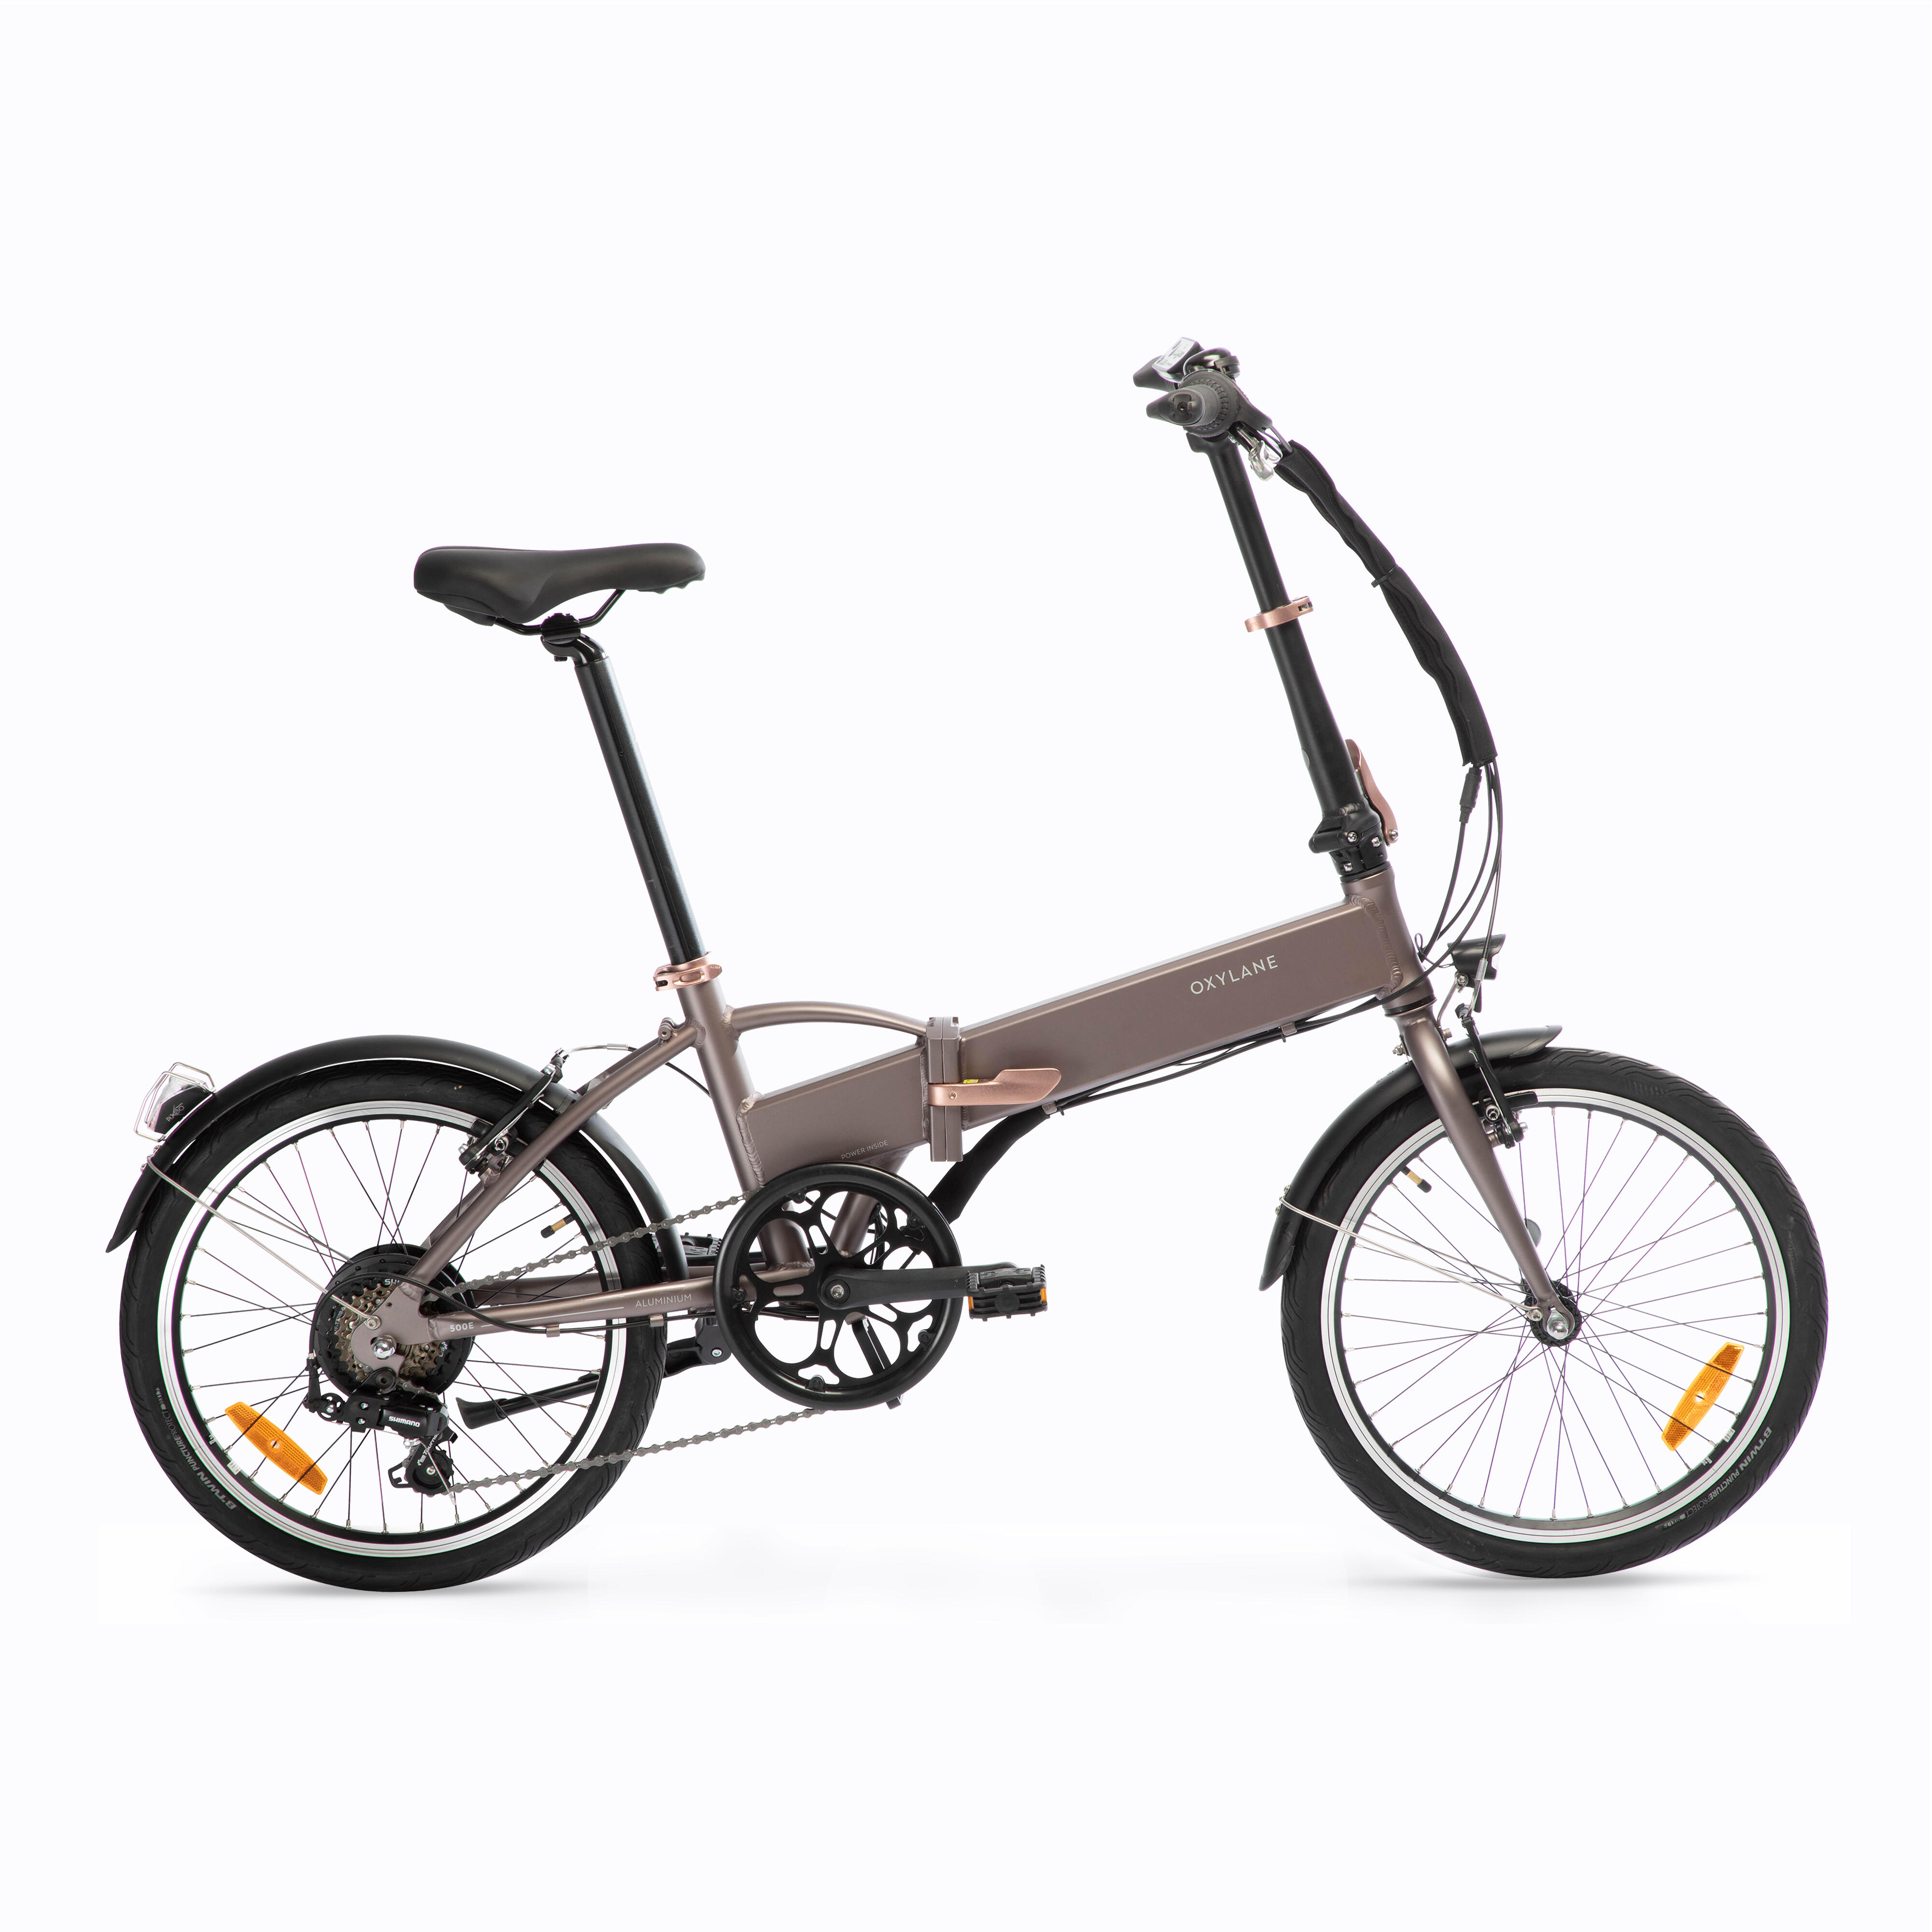 Bicicletă pliabilă cu asistență electrică TILT 500 E BTWIN imagine noua